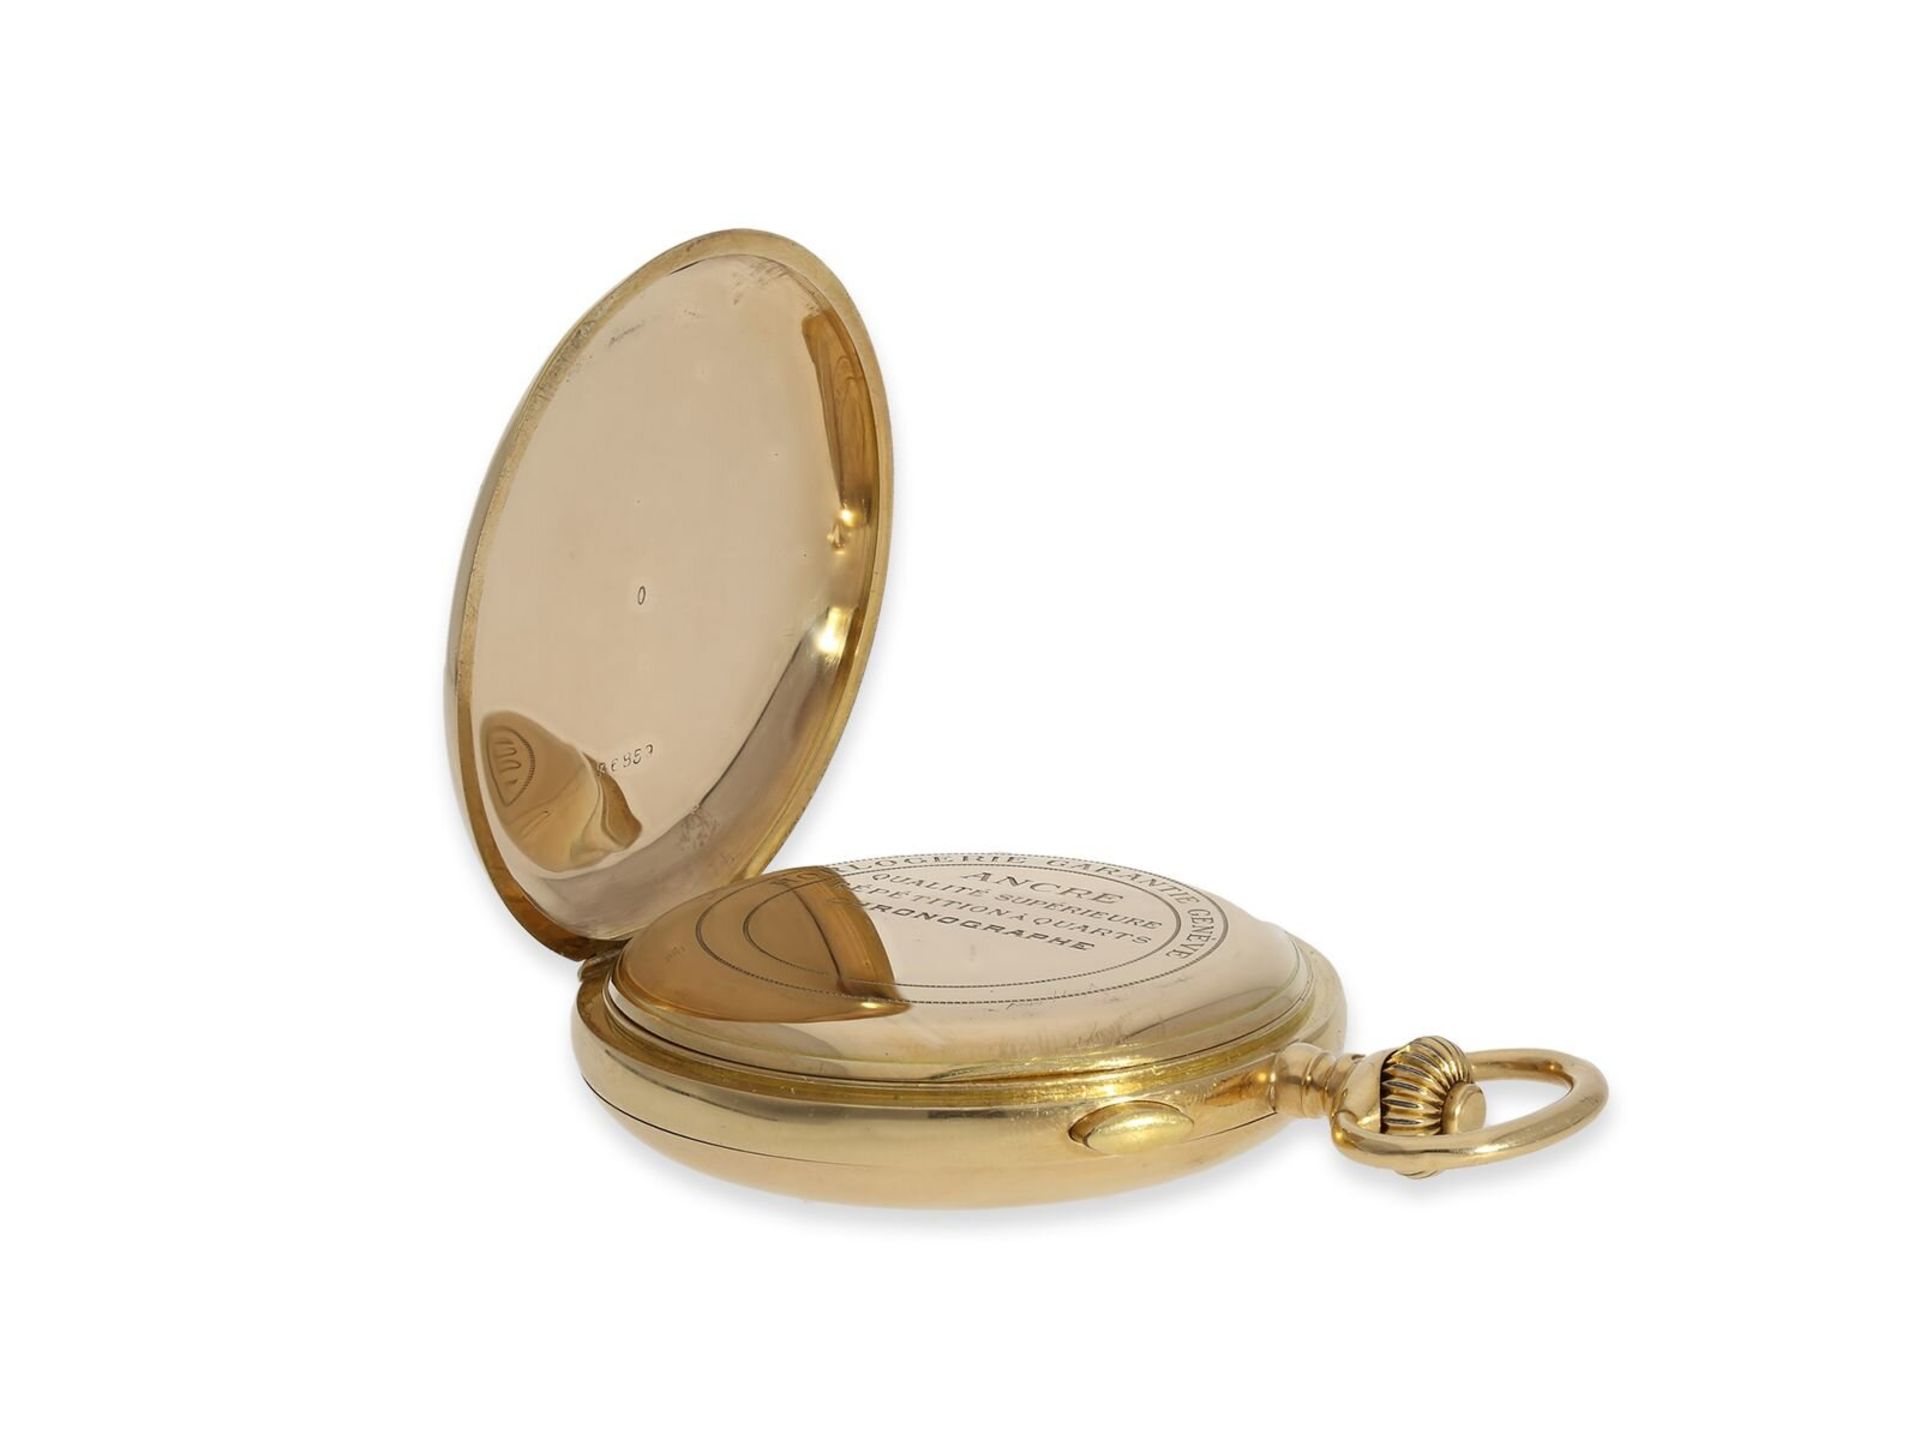 Taschenuhr: schwere rotgoldene Savonnette mit Repetition und Chronograph, 18K Gold, signiert Horloge - Image 5 of 12